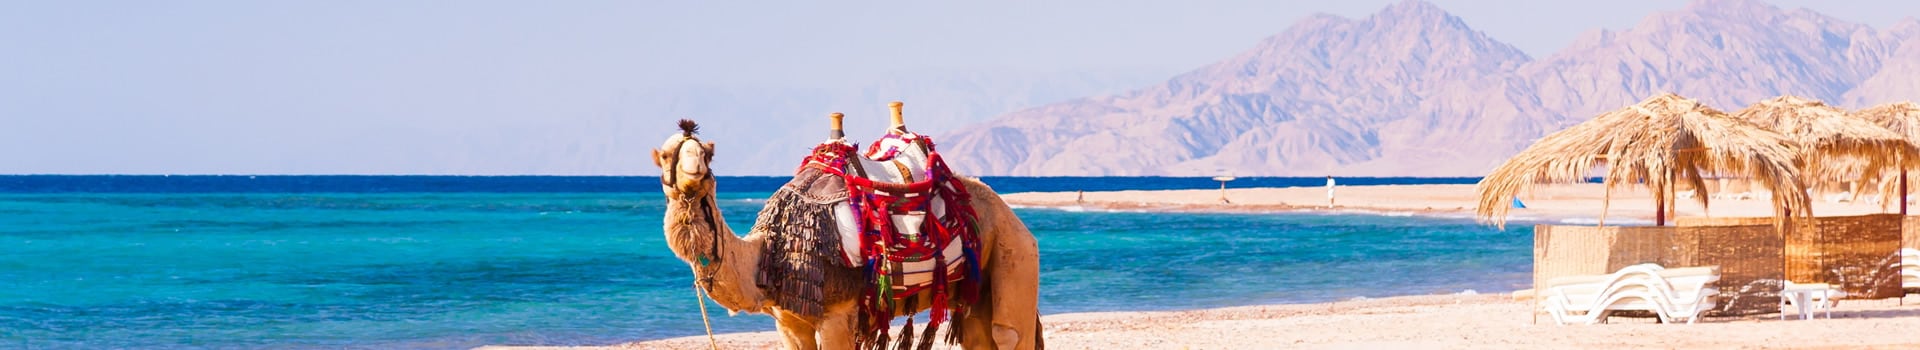 Munique - Hurghada